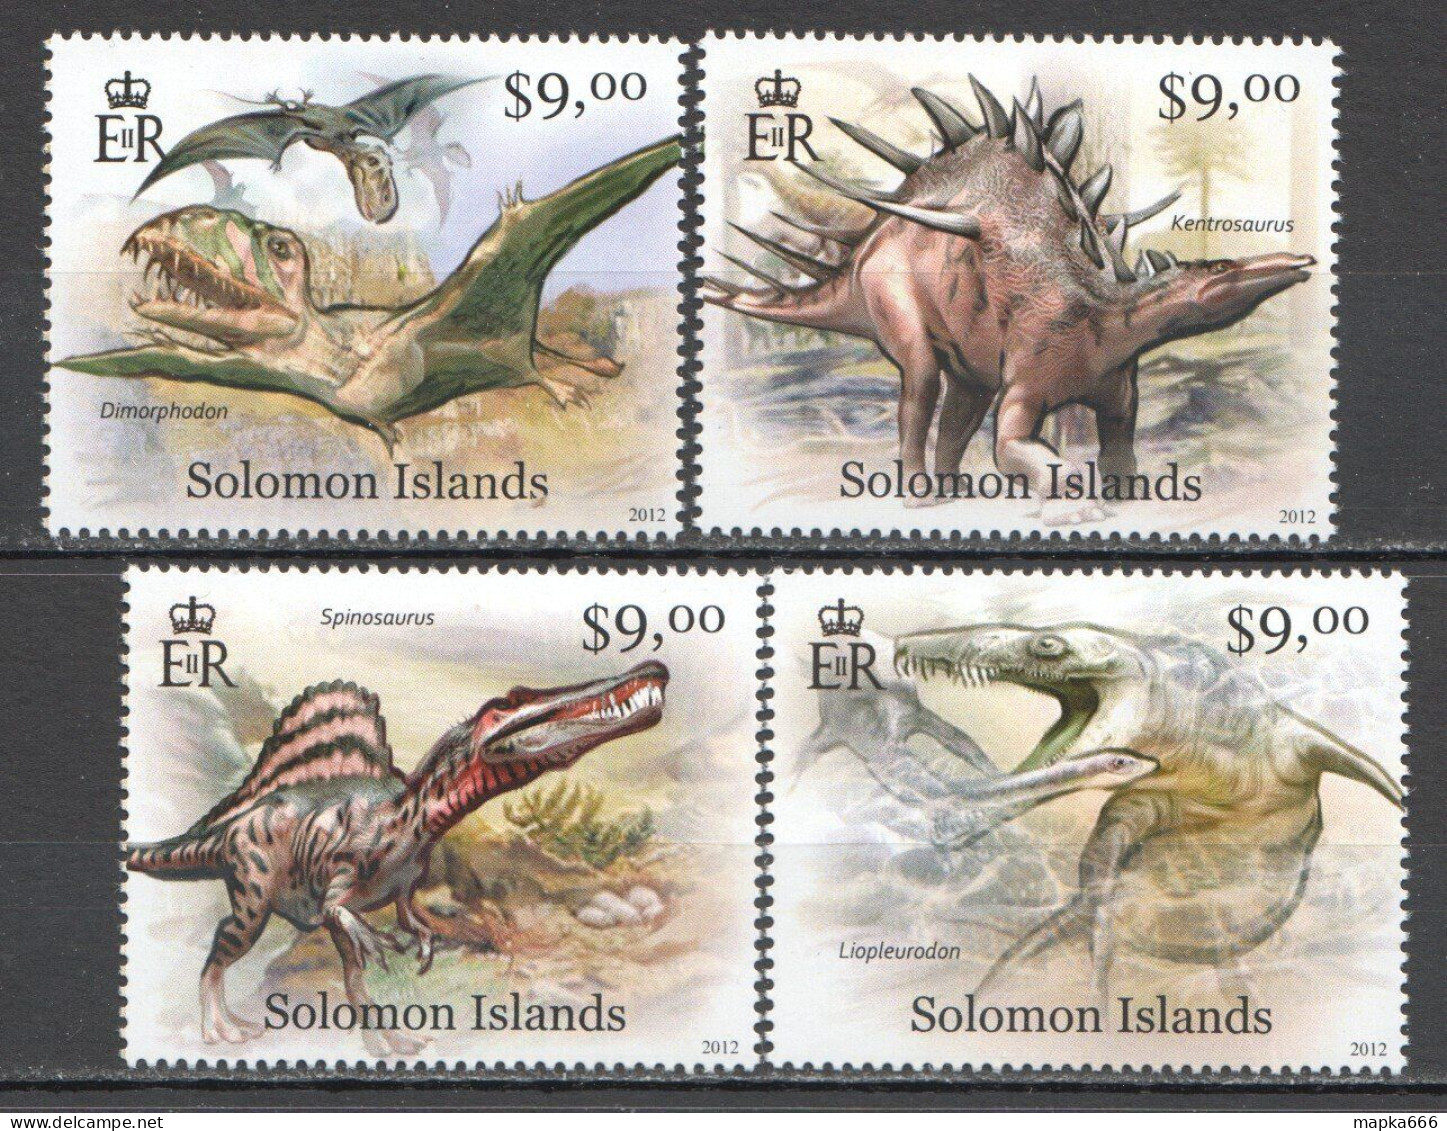 Wb362 2012 Solomon Islands Dinosaurs Fauna #1466-69 Set Mnh - Prehistorisch